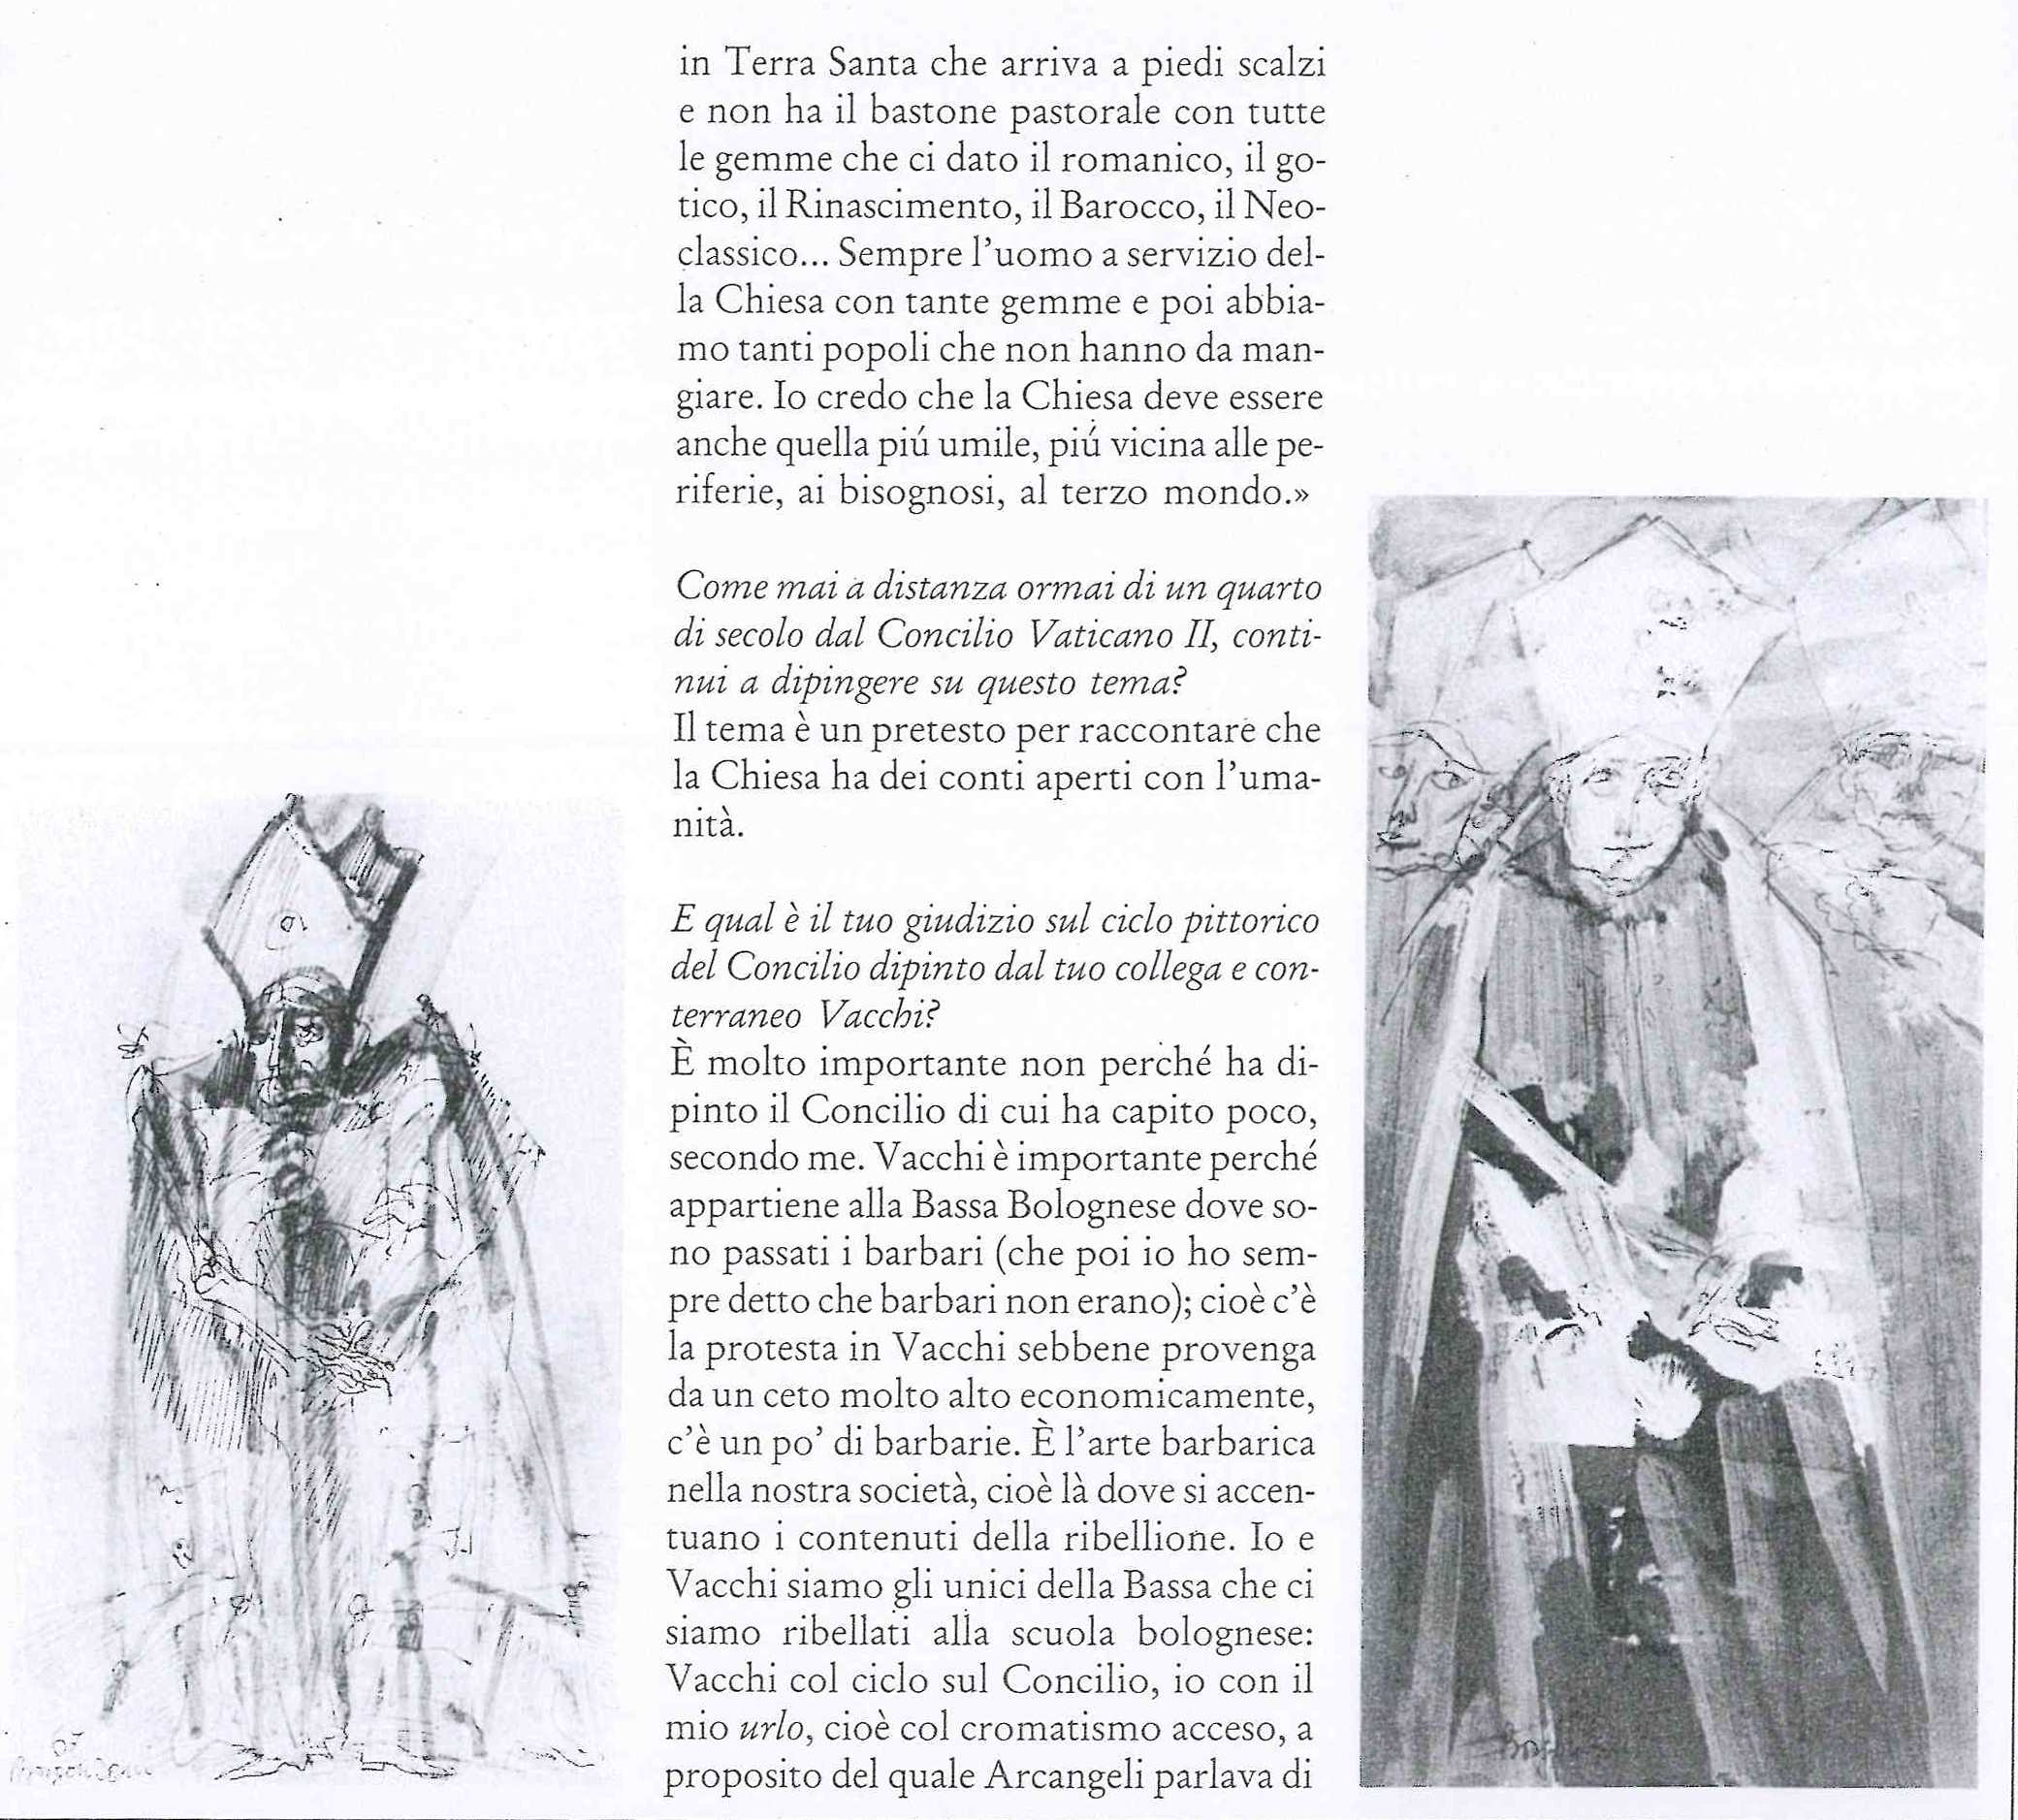 Intervista di L. Strozzieri a A. Borgonzoni, in M.A. Baitello, L. Strozzieri, Borgonzoni, Pescara, Artechiara, 1986, pp. 51-54 e 58